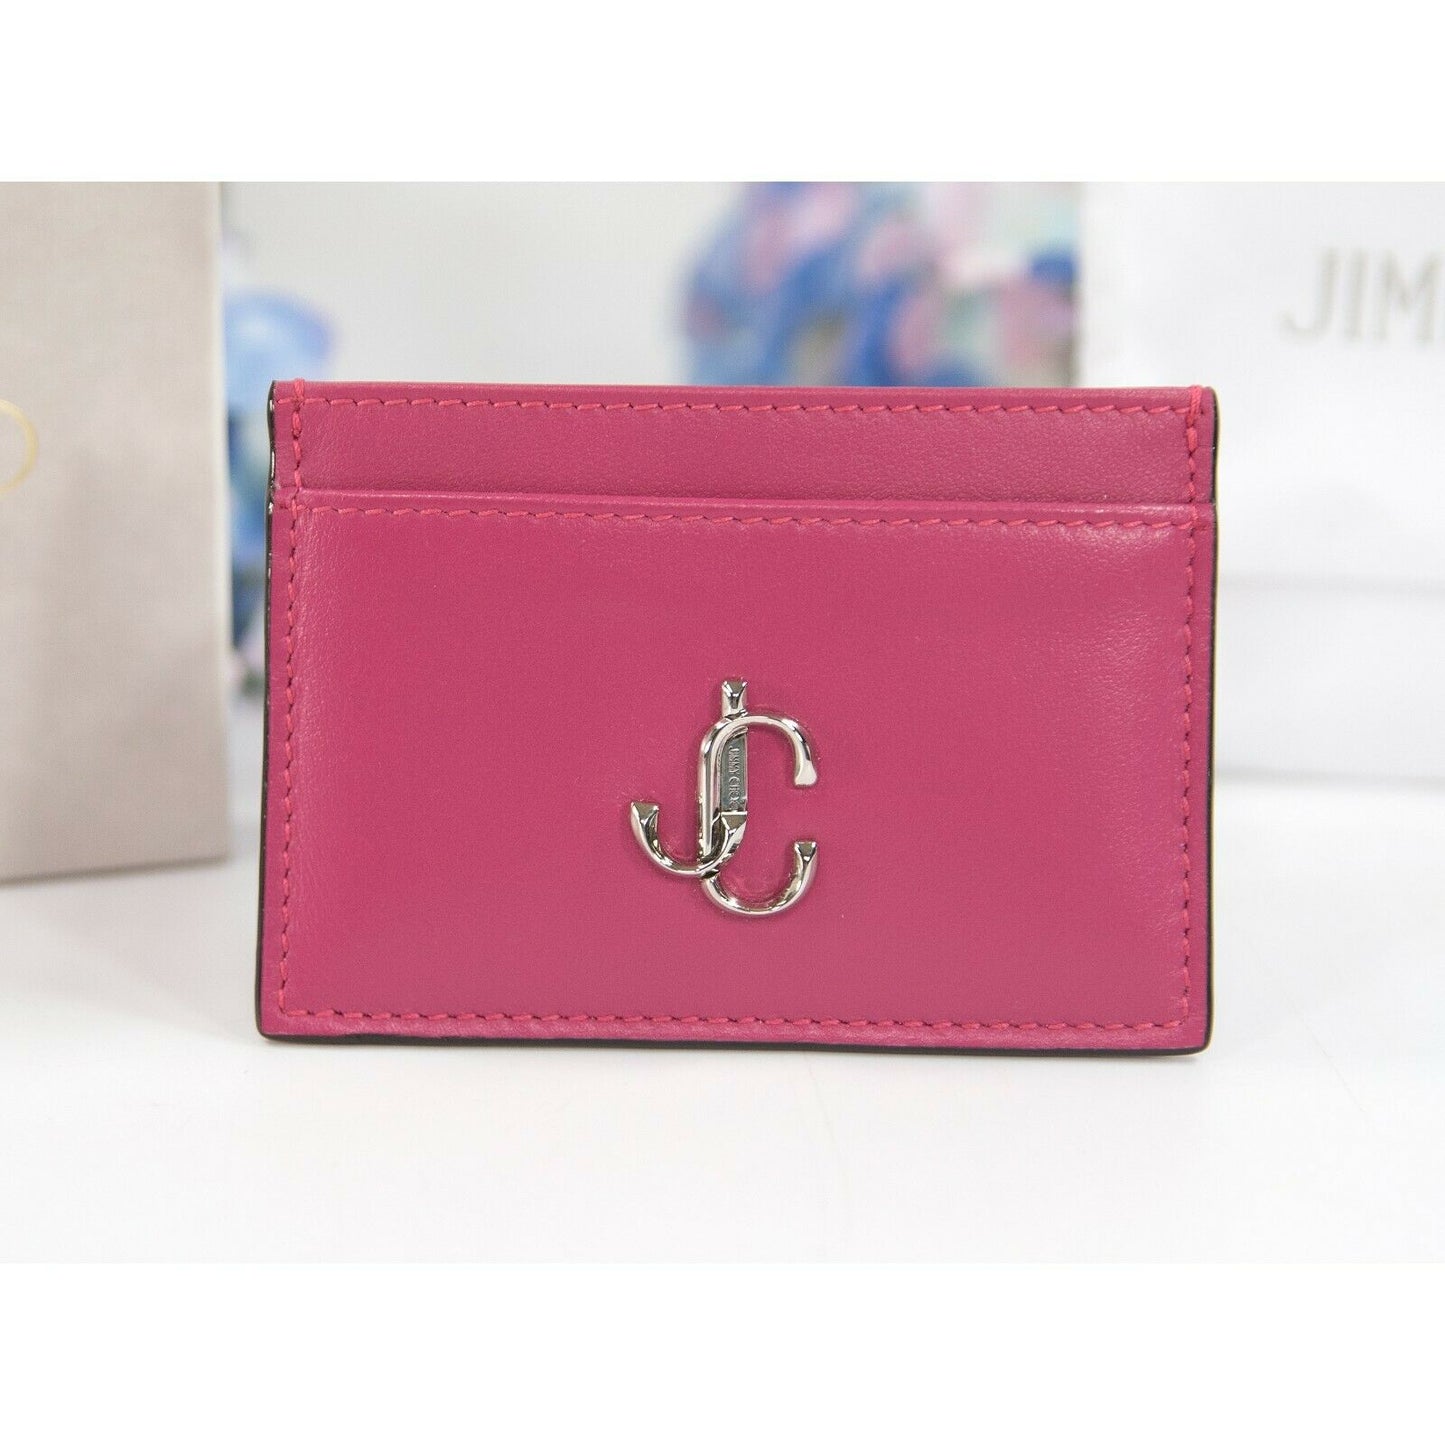 Wallets & purses Jimmy Choo - Logo zip wallet - PIPPAUUFBLACKSILVER